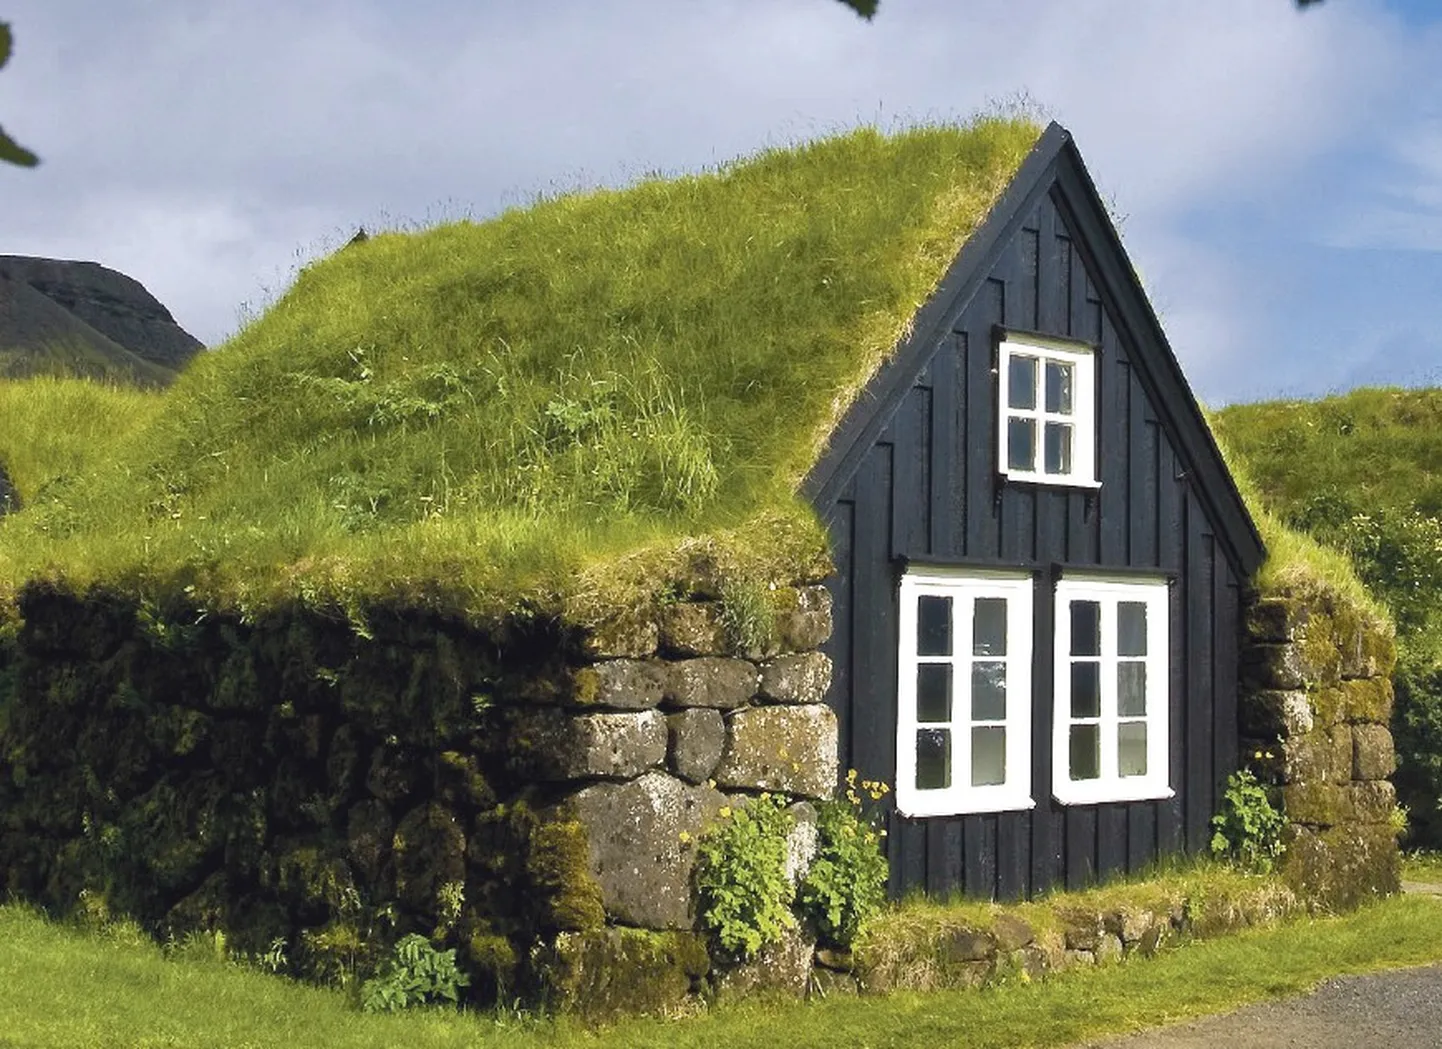 Murukatused on populaarsed põhjamaades, eriti Islandil ja Fääri saartel. Kuid ka Eestis võib murukatuseid rajada, arvestades seejuures meie kliima eripärasid.